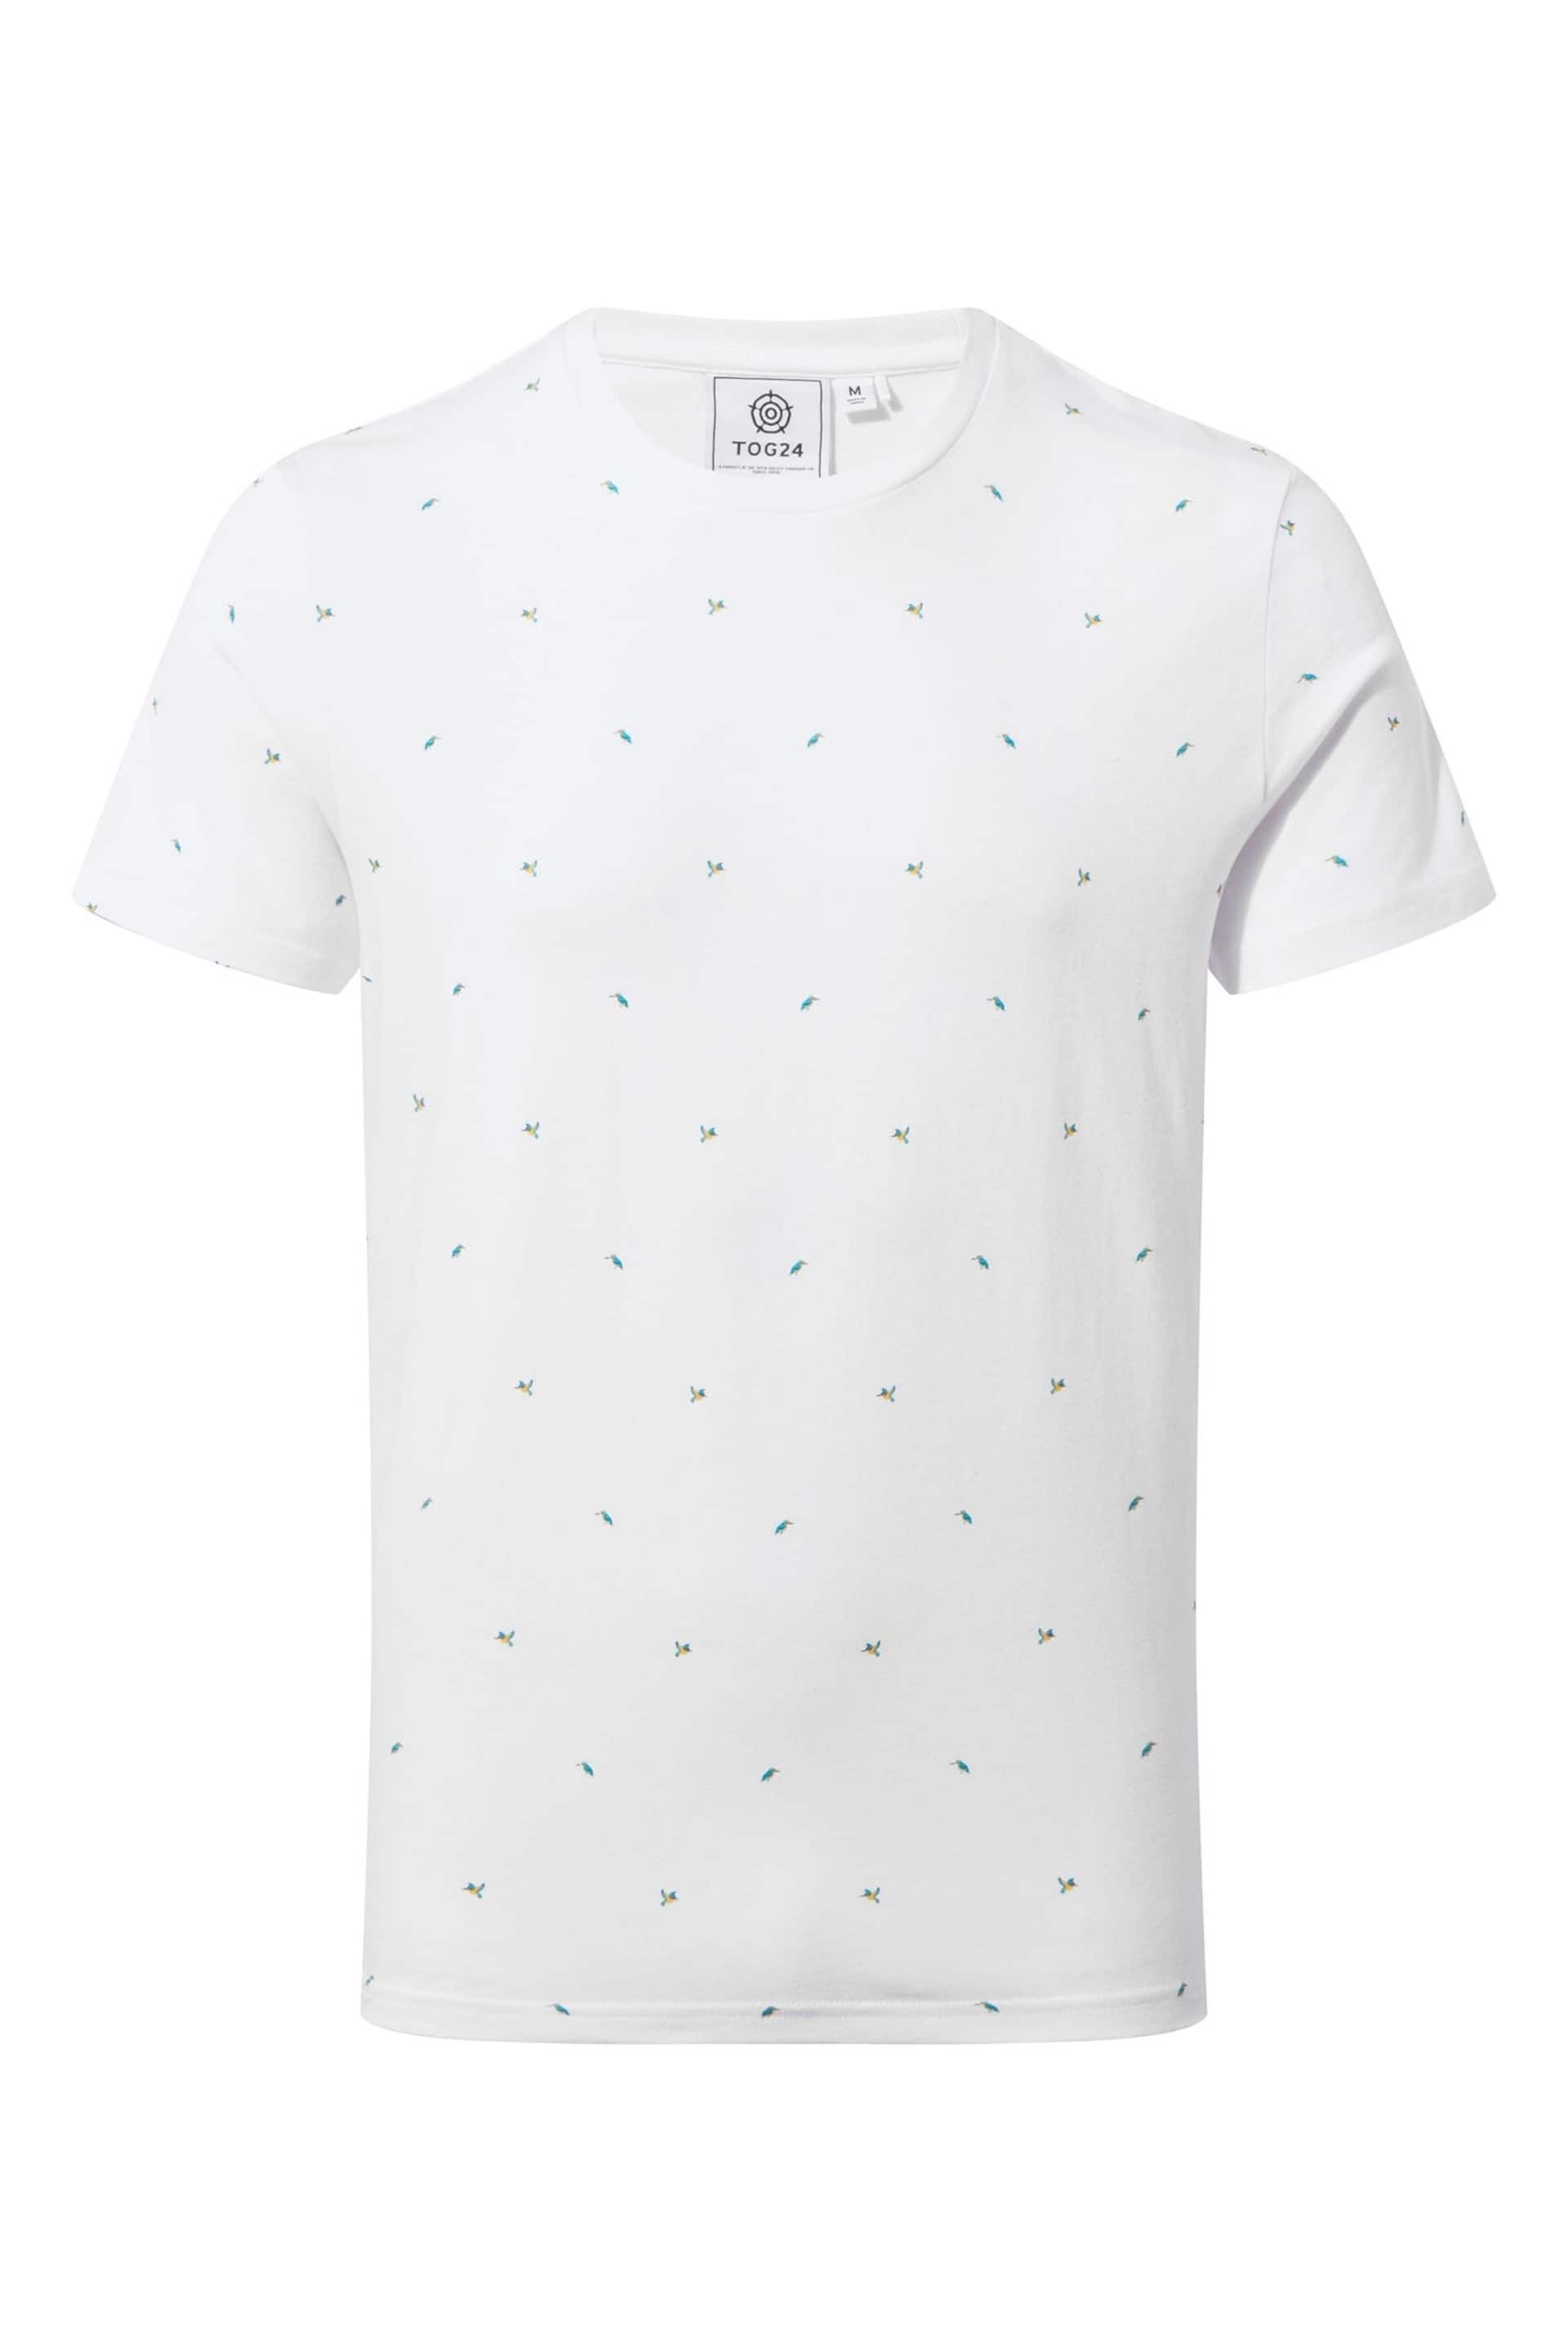 Tog 24 White Tapton T-Shirt - Image 7 of 7